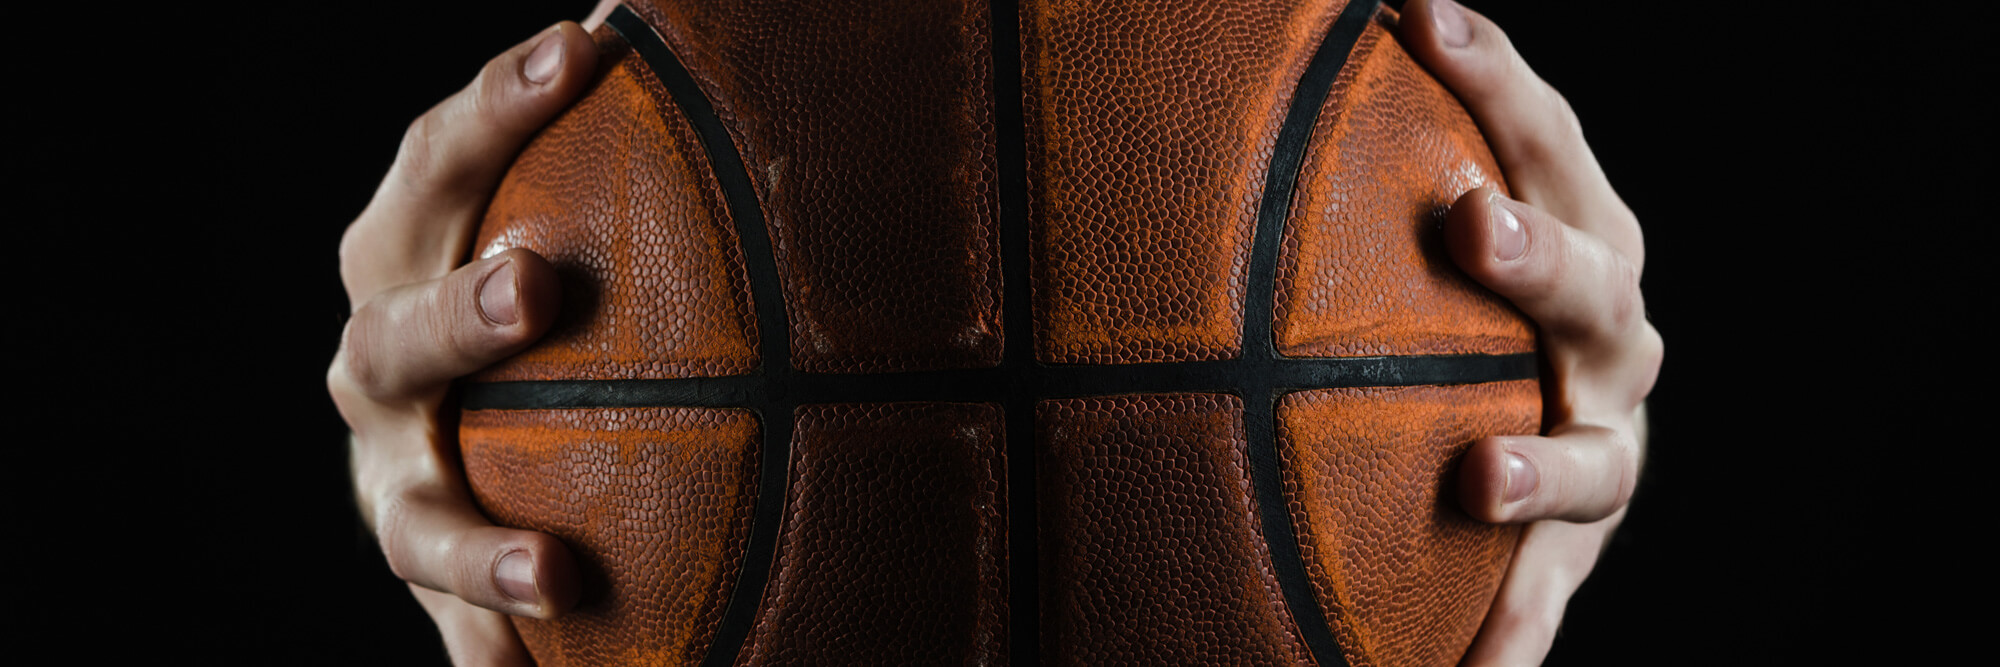 bg9 Omnia Sports Basketball Agency